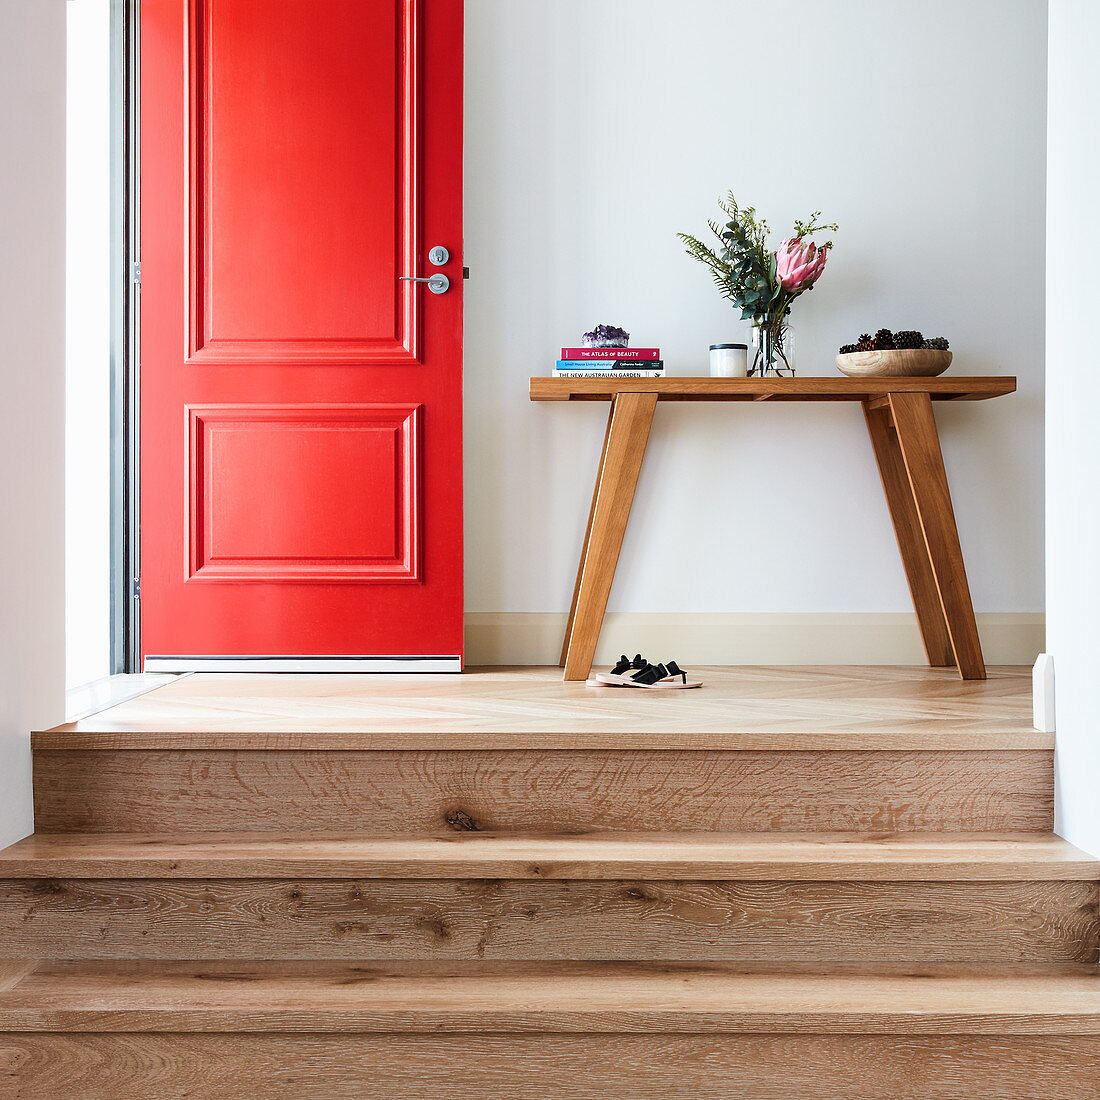 Stufen zum Flur mit Konsolentisch und offener roter Haustür